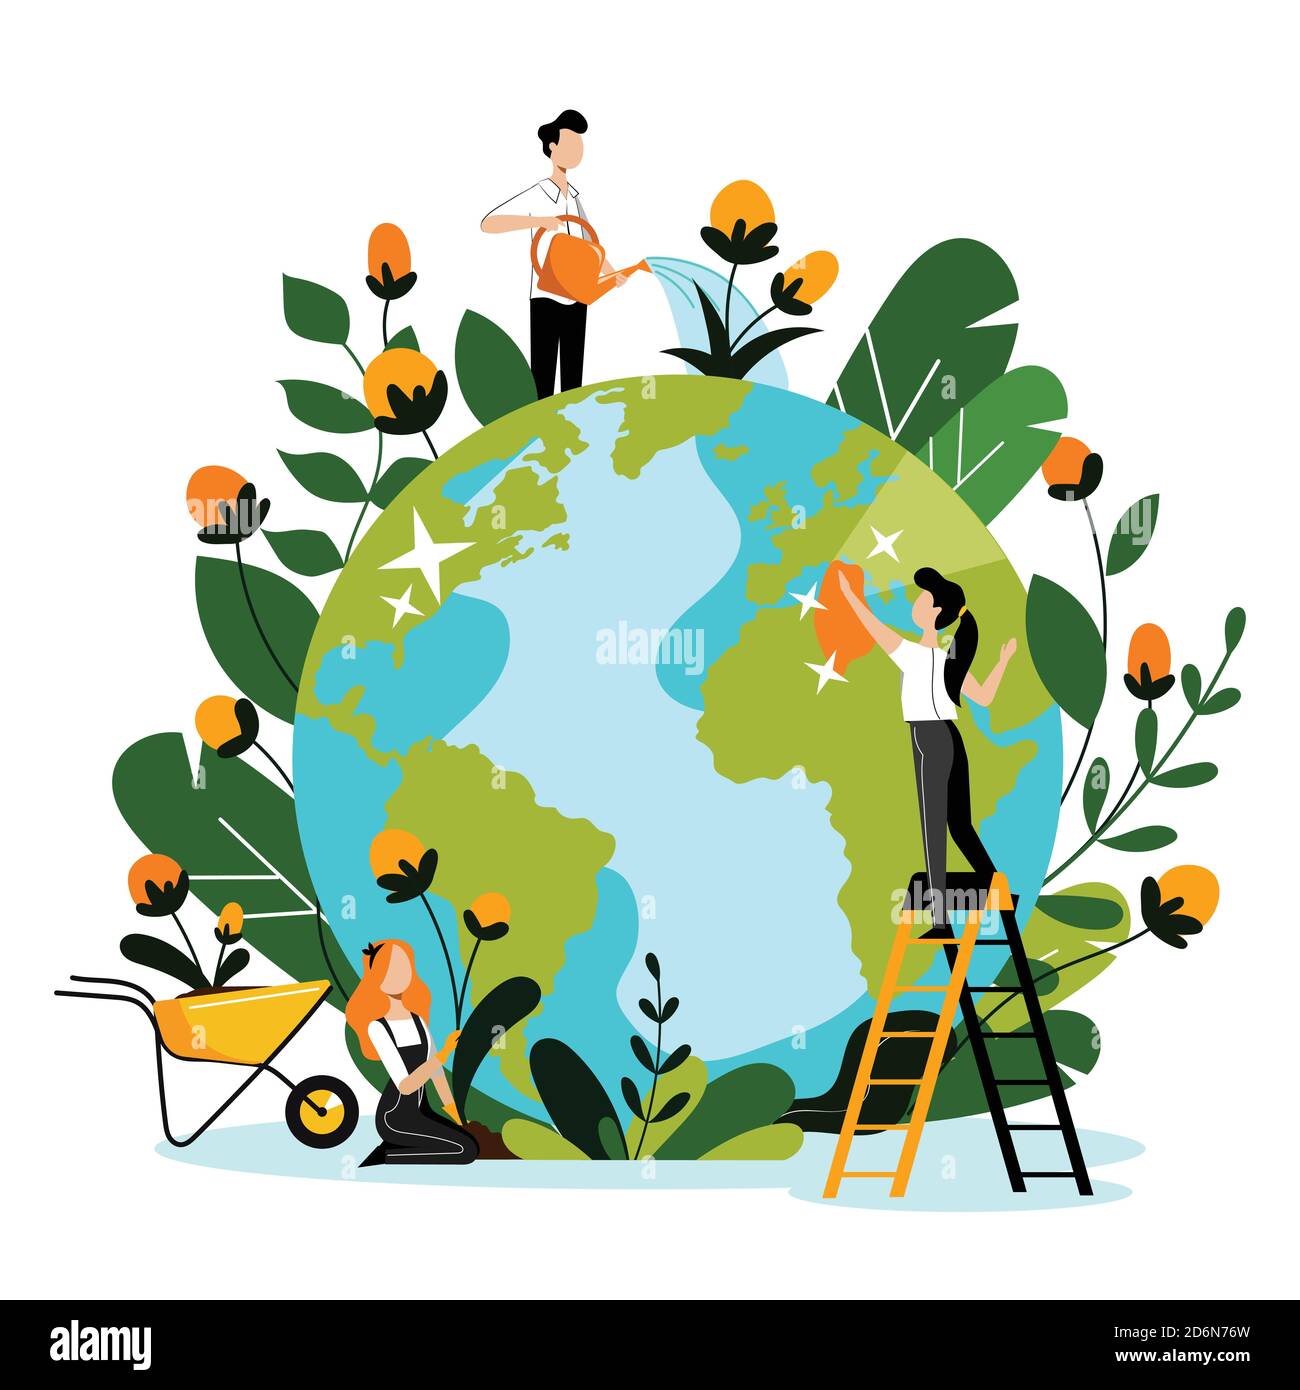 Umwelt, Ökologie, Naturschutz Konzept. Junge Freiwillige kümmern sich um den Planeten Erde und die Umwelt Natur. Vektor flache Cartoon-Illustration Stock Vektor